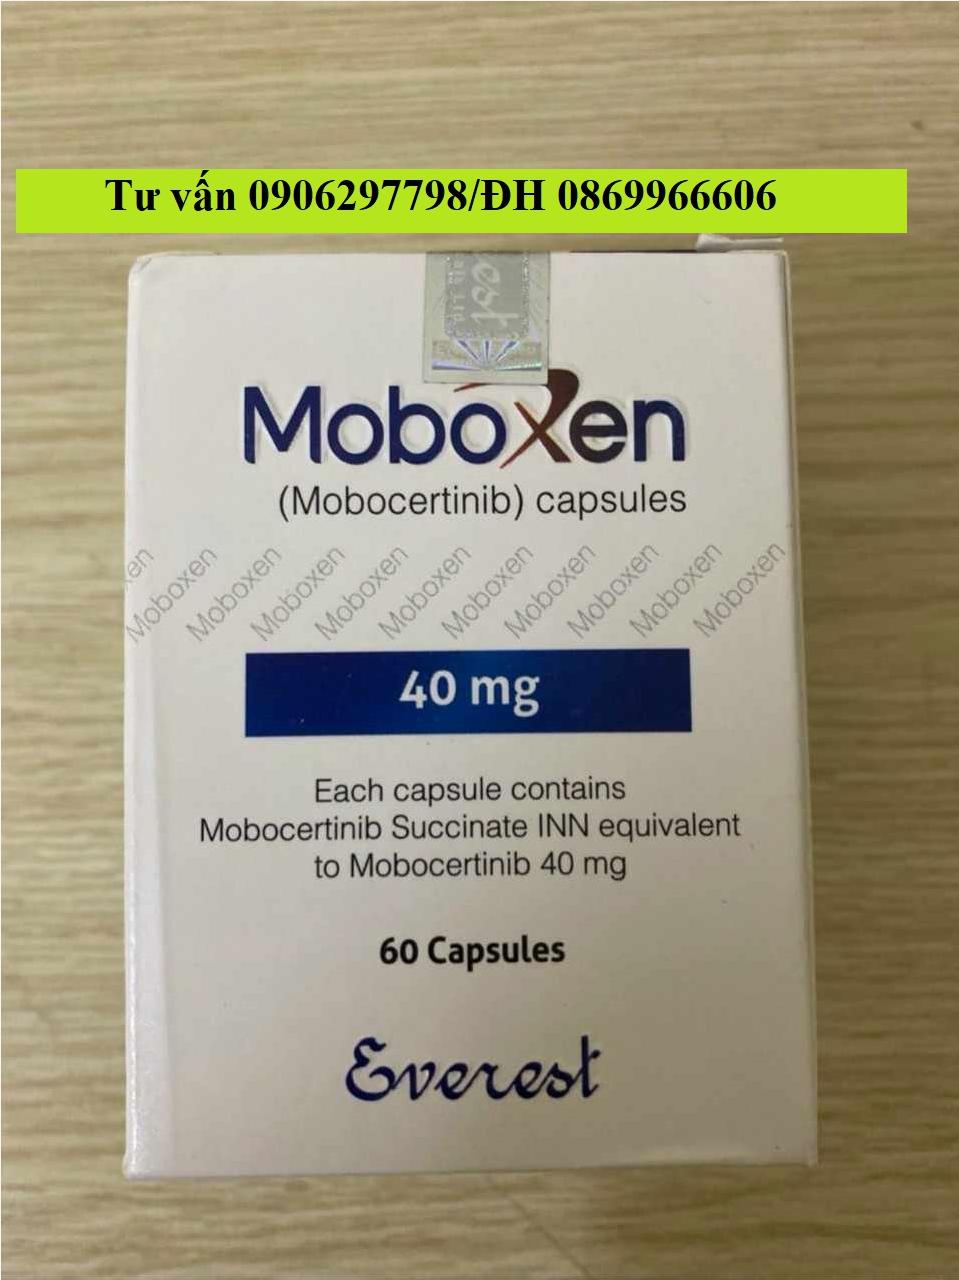 Thuốc Moboxen Mobocertinib 40mg giá bao nhiêu mua ở đâu?